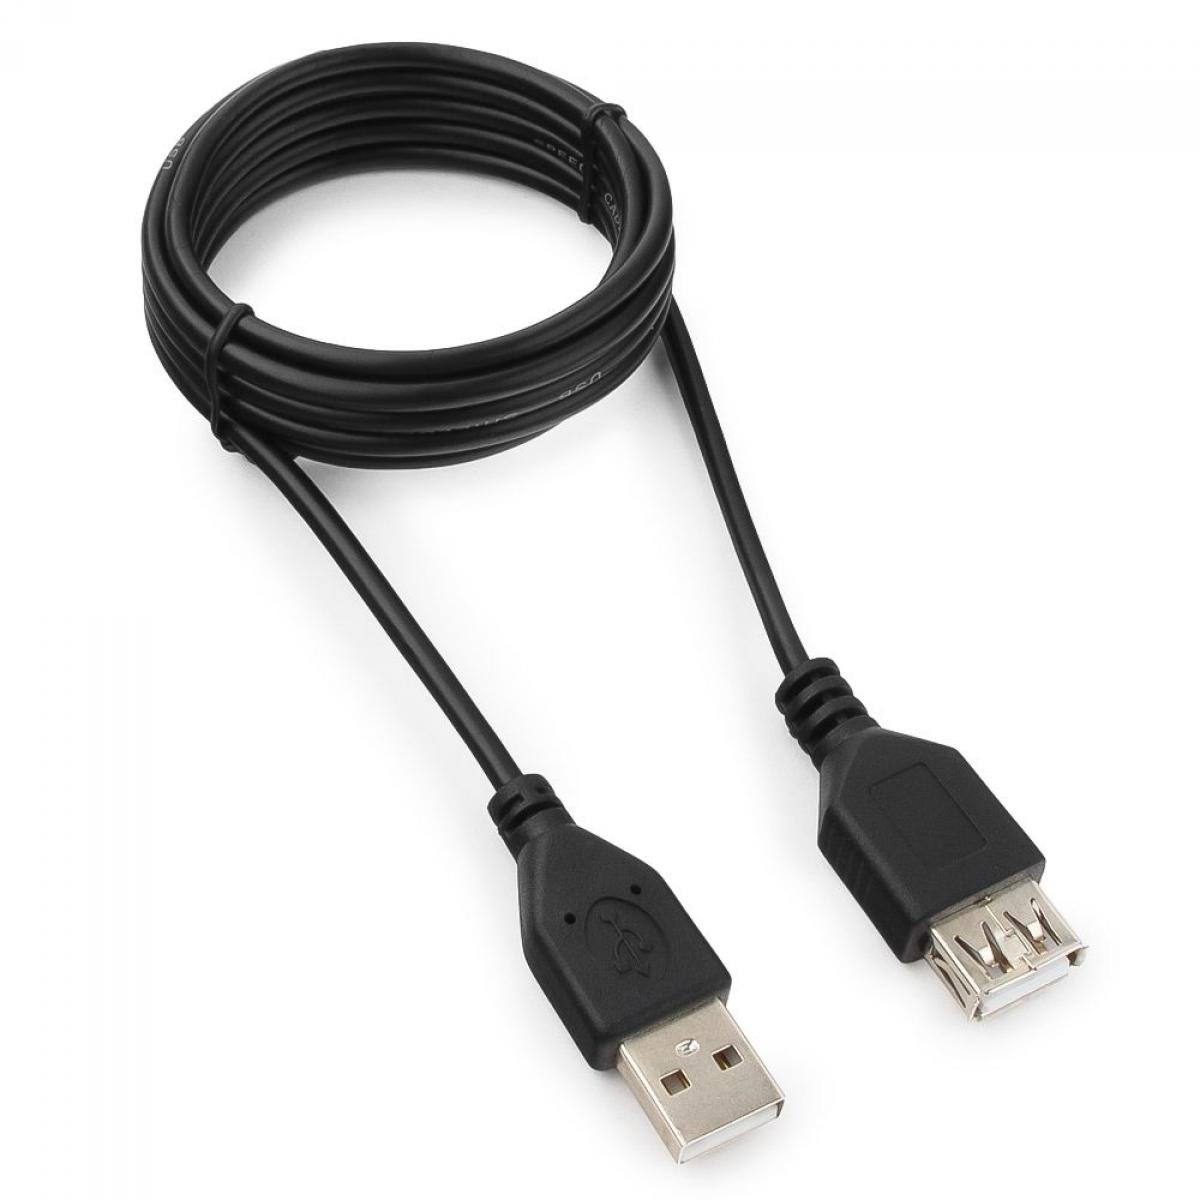 Удлиненный usb. Кабель удлинитель Гарнизон USB 2.0, am/af, 1м, пакет (GCC-usb2-AMAF-1m). Удлинитель USB 2.0 am/af 1м. Удлинитель Гарнизон USB - USB (GCC-usb2-AMAF) 1 М. Удлинитель 1.8м USB2.0 am-af.